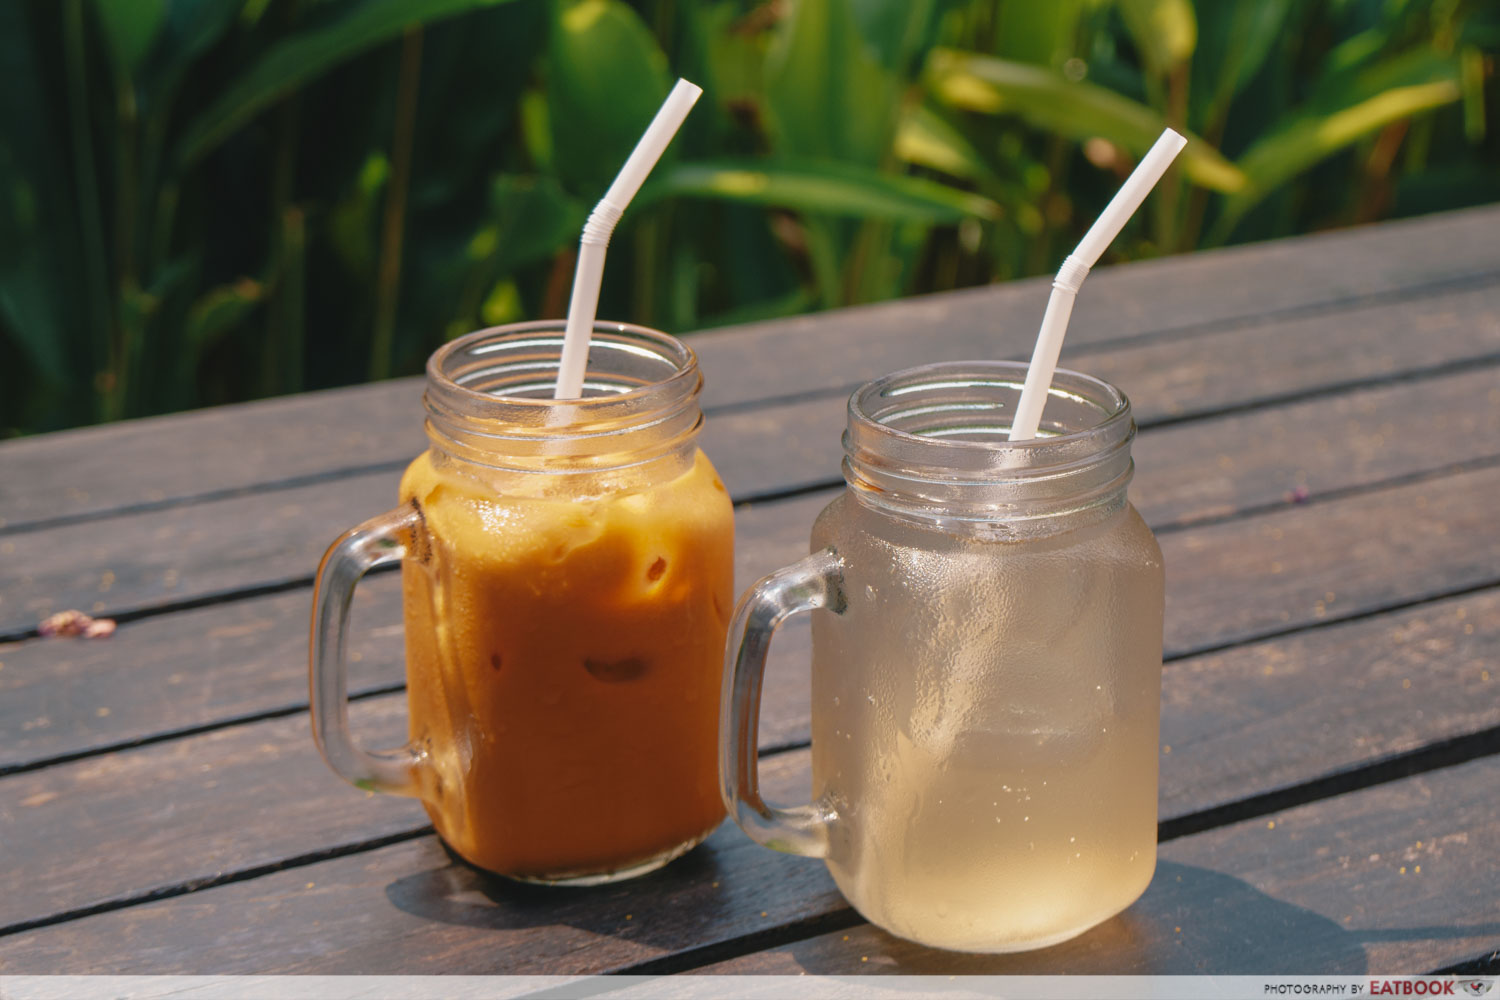 Thai By The Park - Thai Milk Tea And Lemongrass